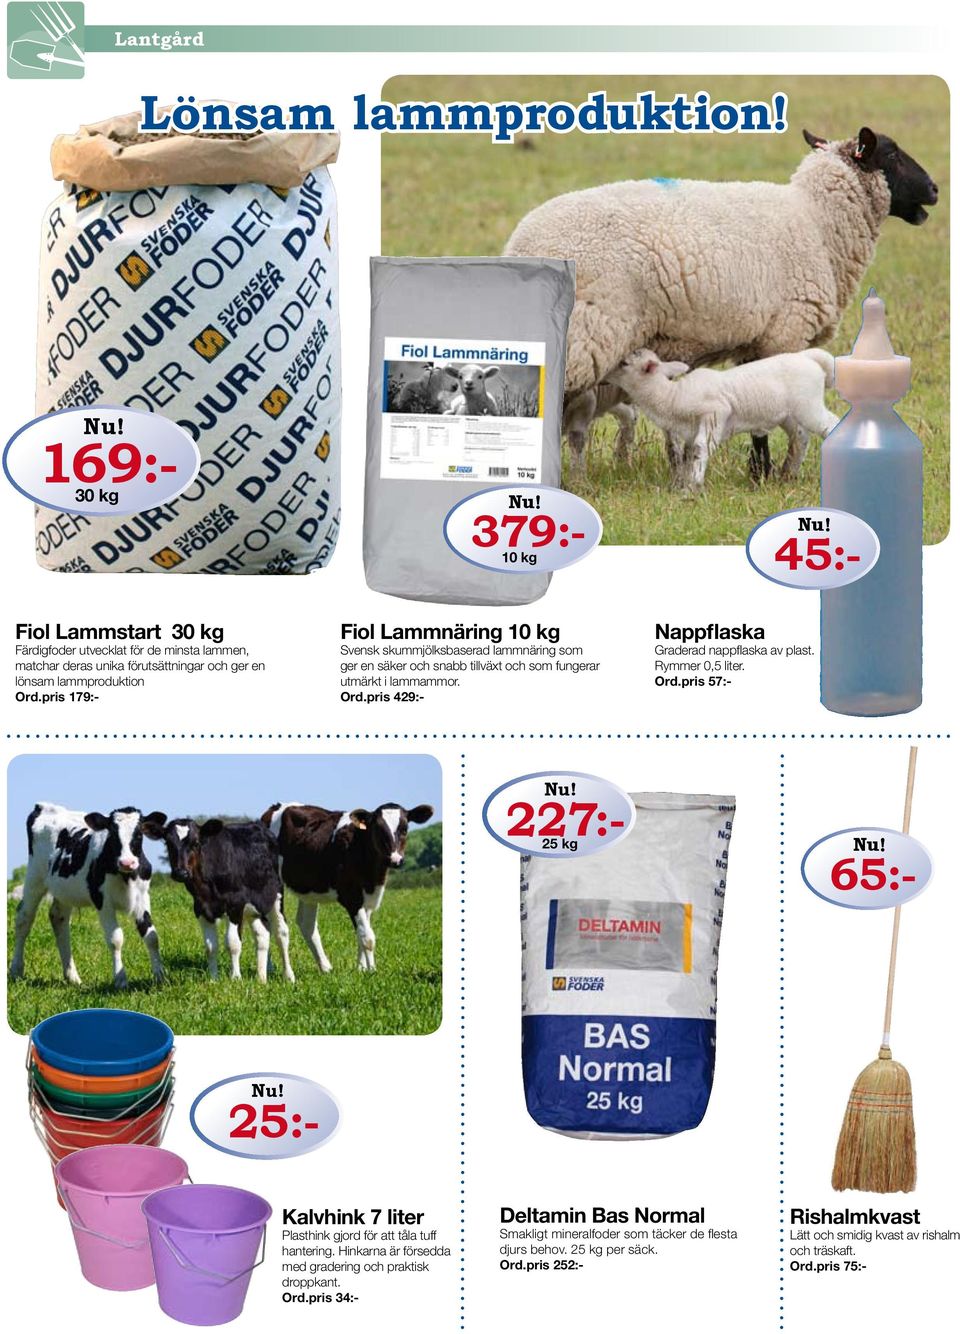 pris 179:- Fiol Lammnäring 10 kg Svensk skummjölksbaserad lammnäring som ger en säker och snabb tillväxt och som fungerar utmärkt i lammammor. Ord.